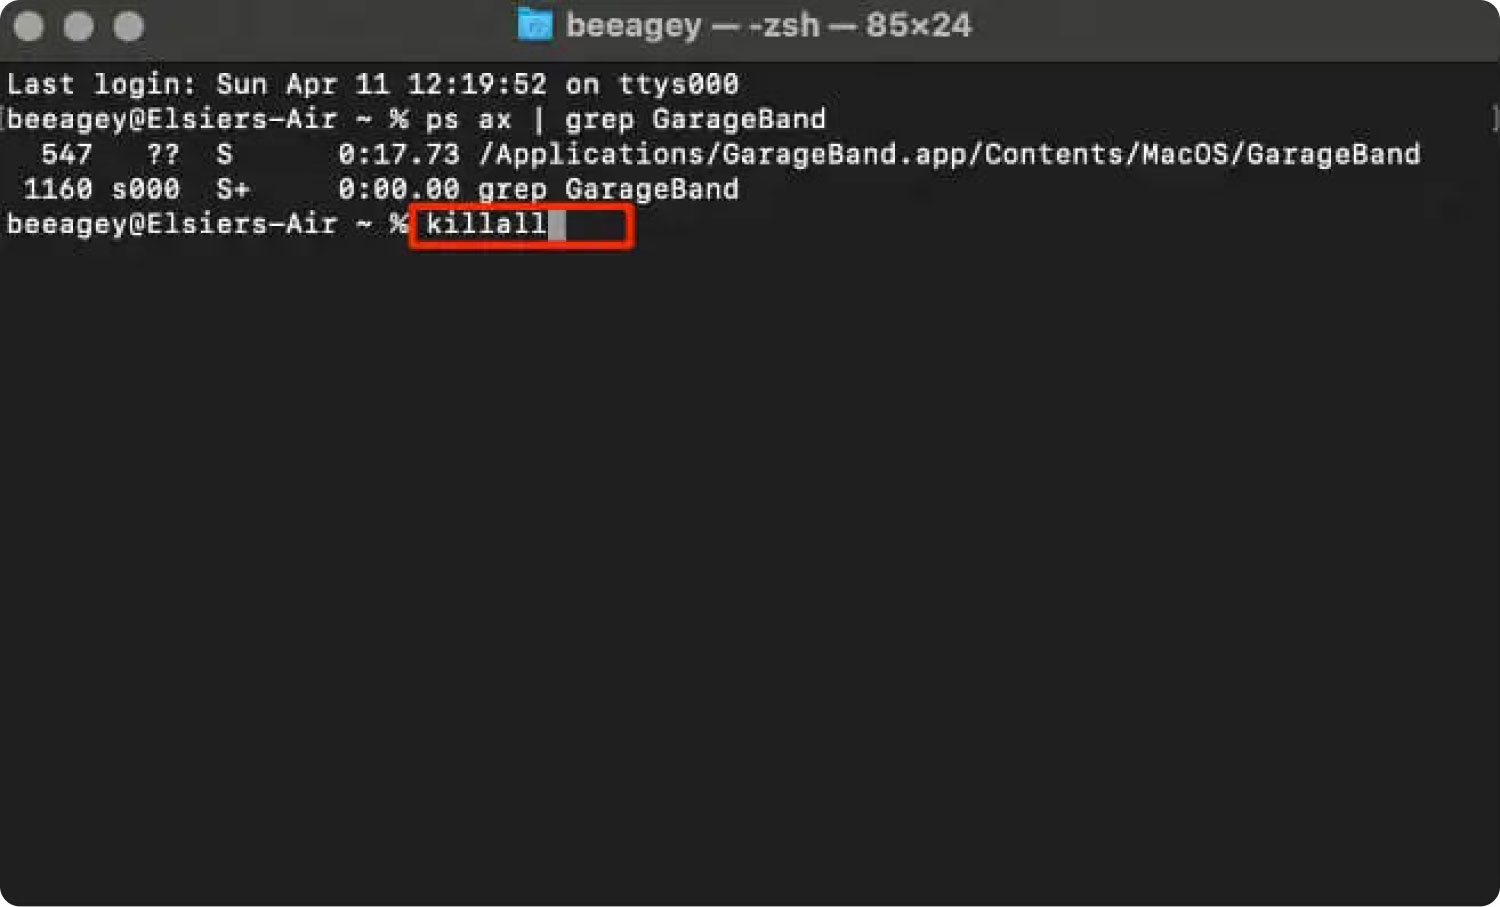 Utilizzo del terminale per controllare + Alt + Canc su un Mac